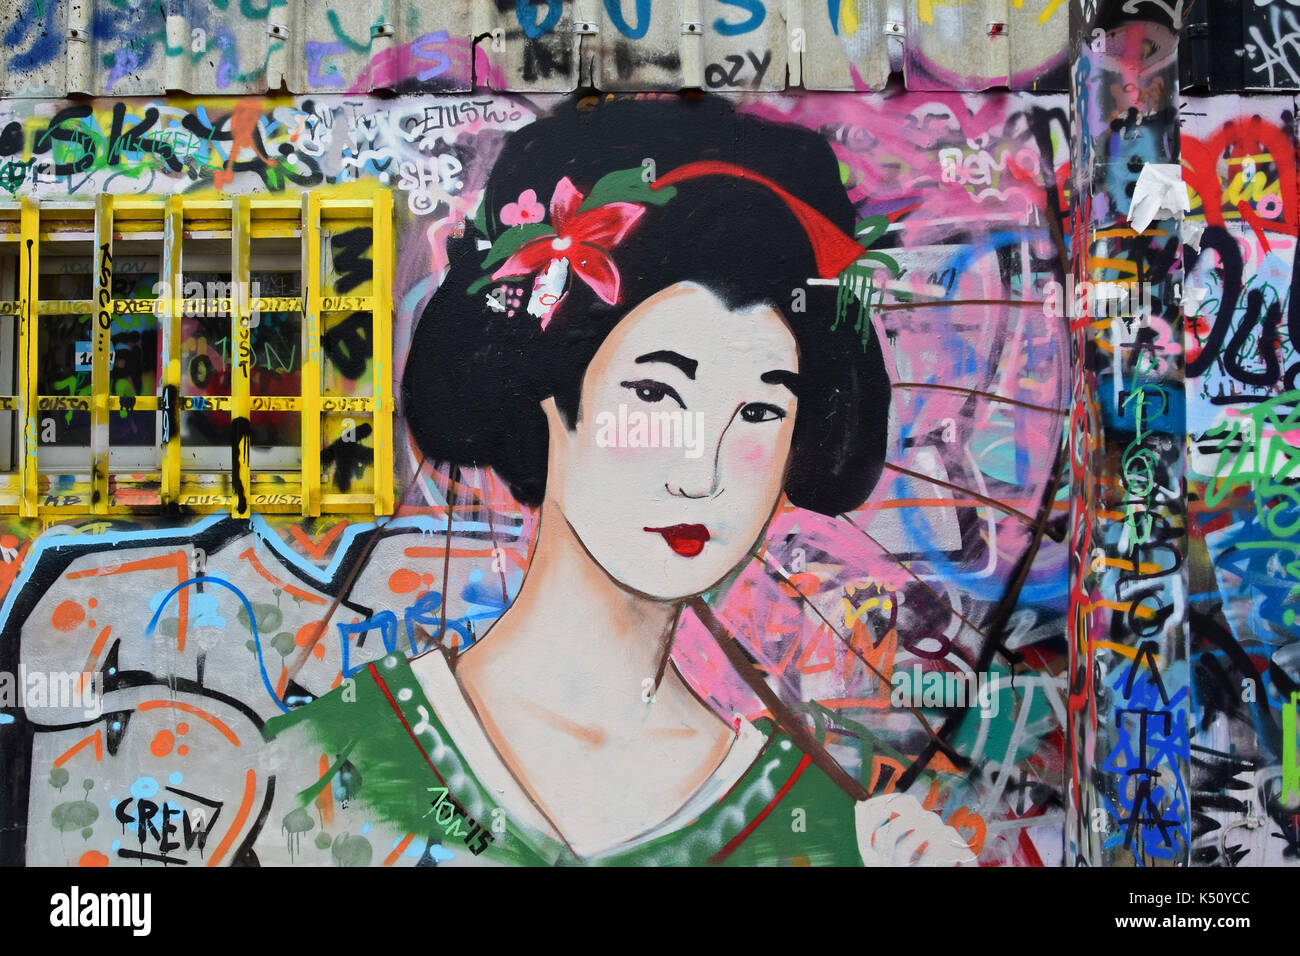 Athènes, Grèce - décembre 10, 2015 : geisha japonaise traditionnelle graffiti figure féminine avec un parasol sur mur peint à la bombe couleur. Urban street art. Banque D'Images